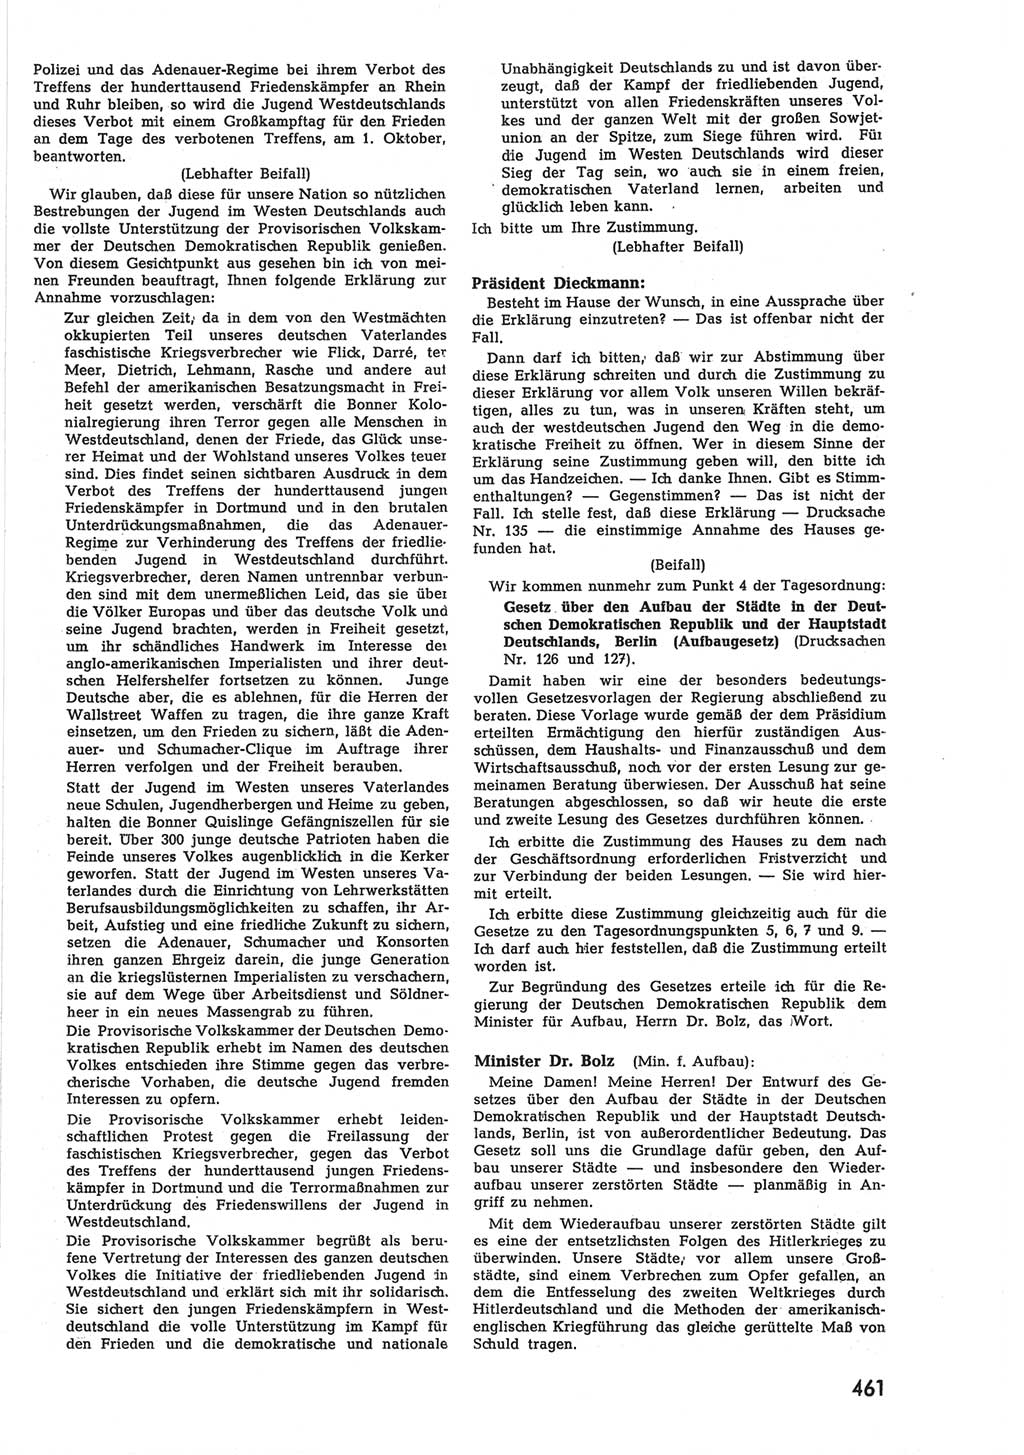 Provisorische Volkskammer (VK) der Deutschen Demokratischen Republik (DDR) 1949-1950, Dokument 479 (Prov. VK DDR 1949-1950, Dok. 479)